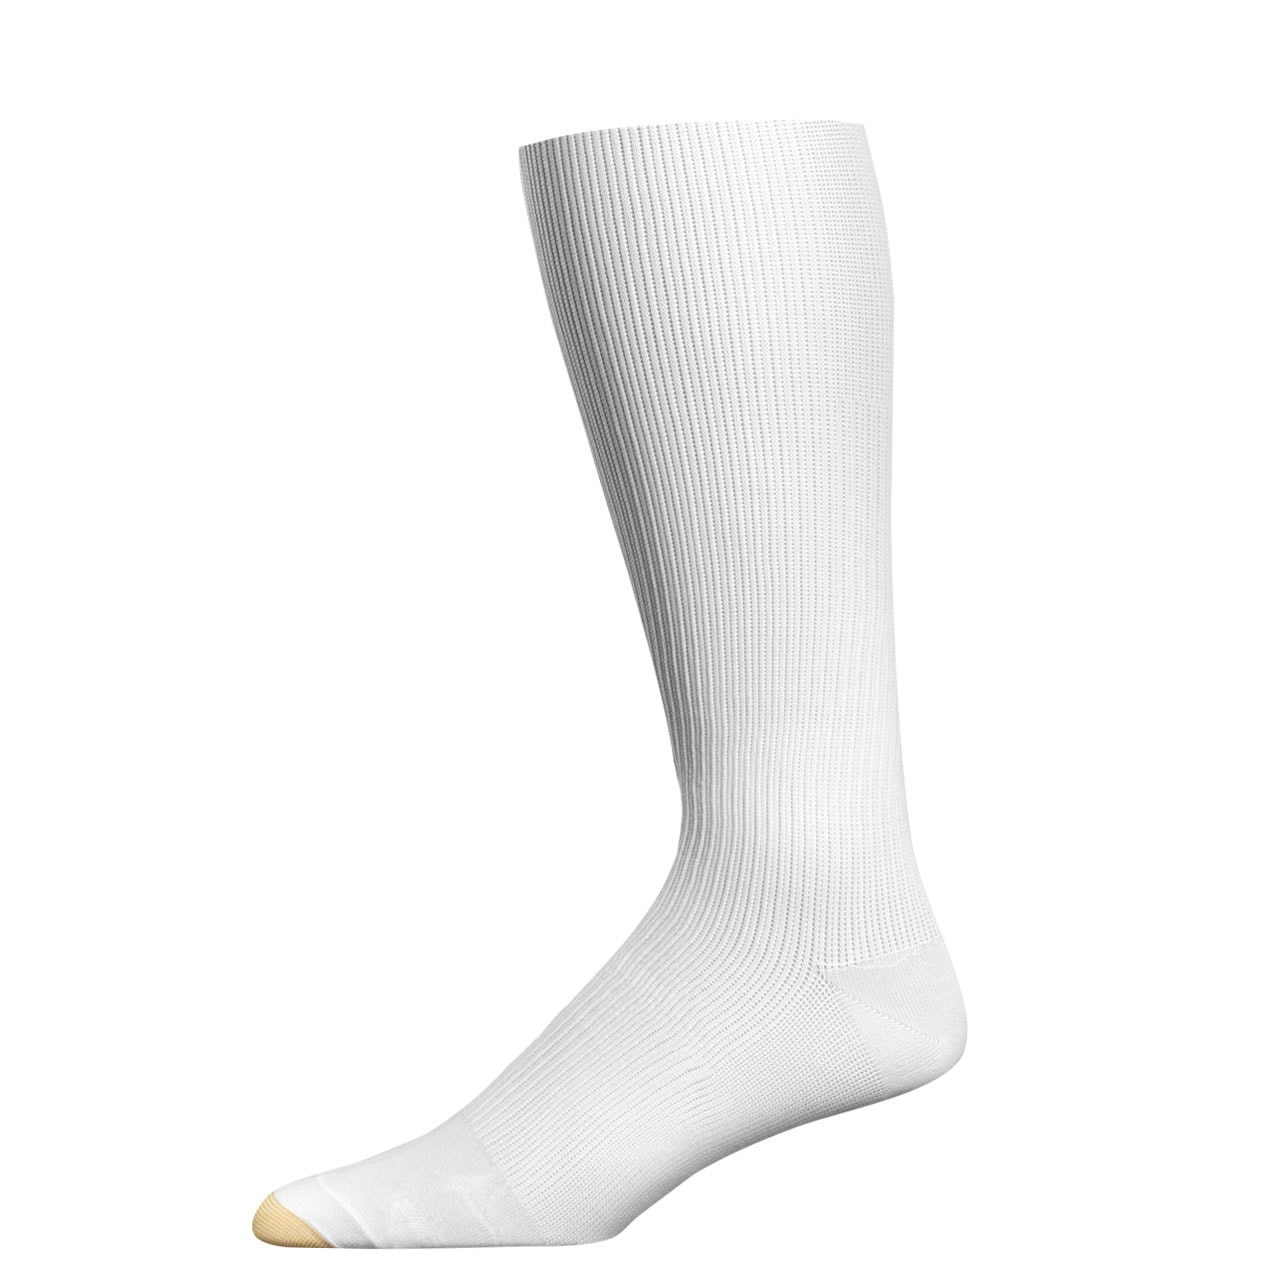 Goldtoe Basic Support Firm Compression Dress Socks